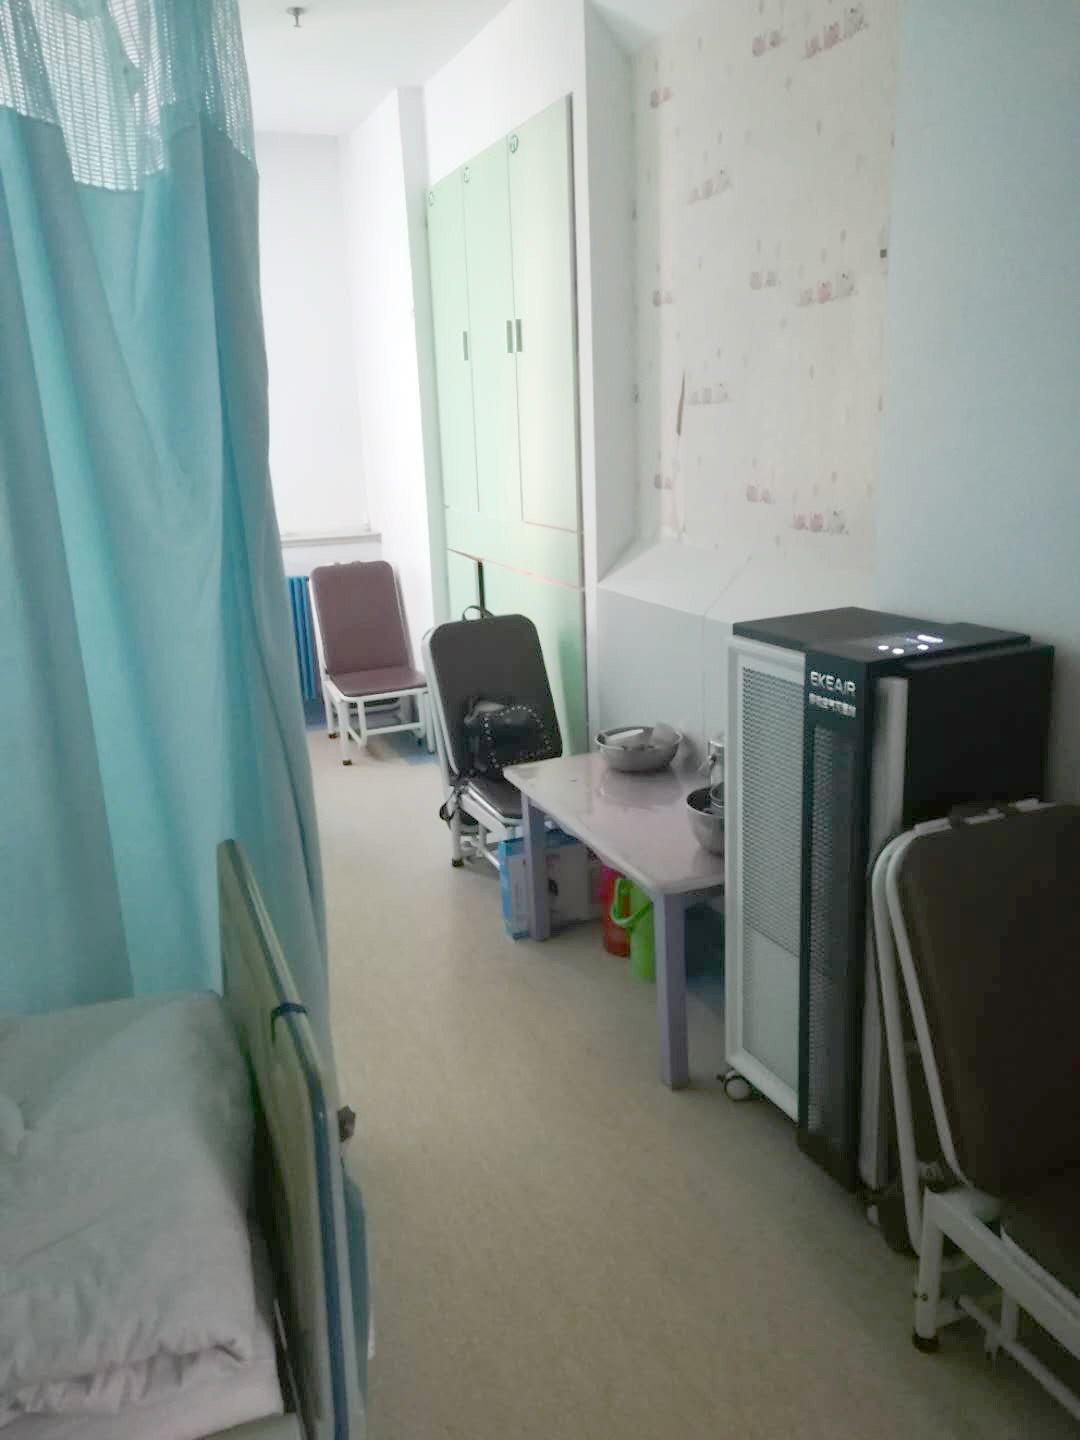 أحدث حالة شركة حول مستشفى مقاطعة شاندونغ